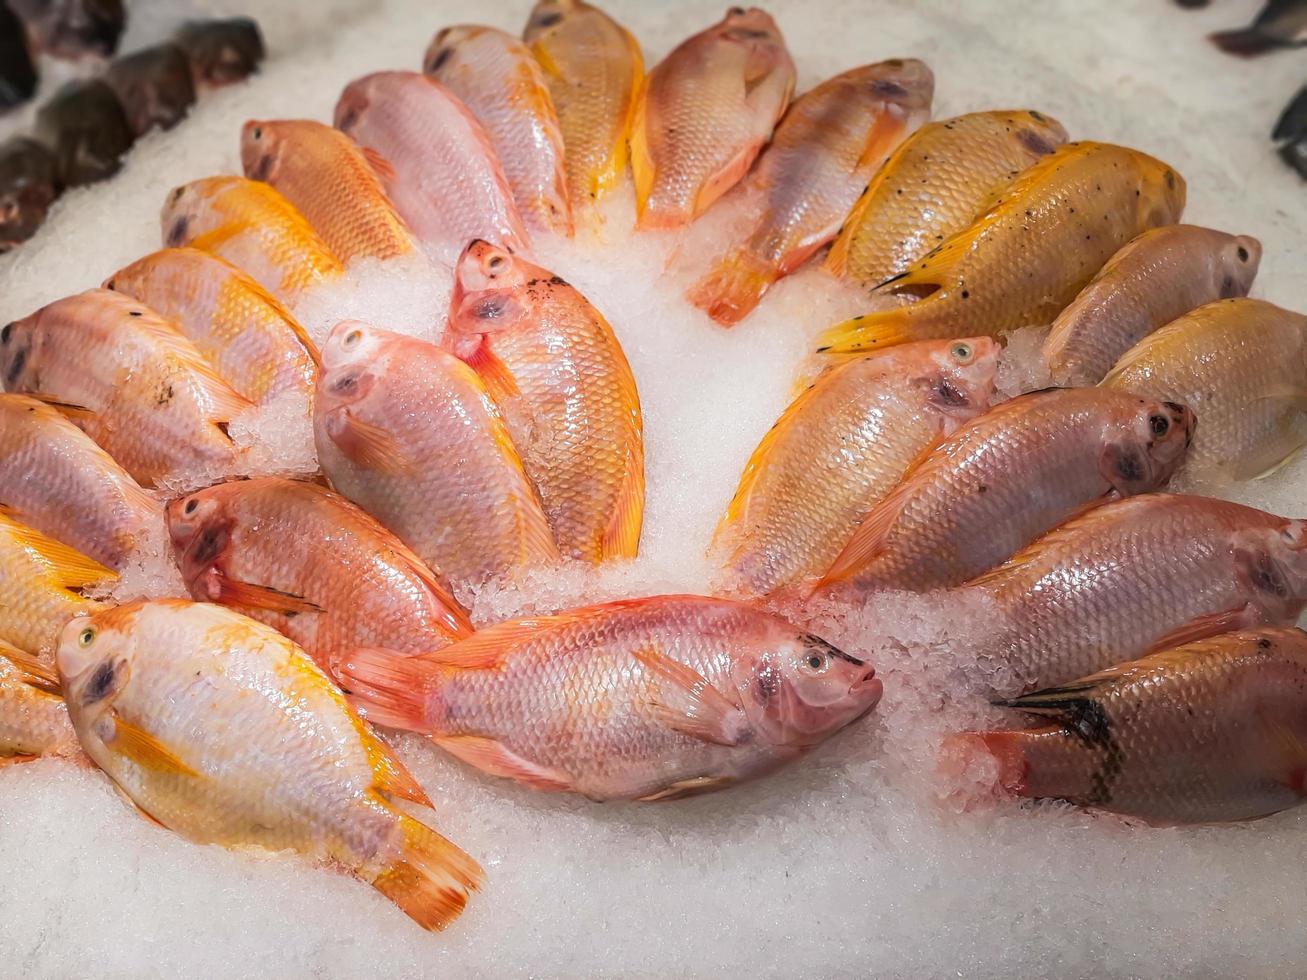 Nahaufnahme von rohem frischem Fisch, der auf Eis im Marktstand für Meeresfrüchte kühlt? foto